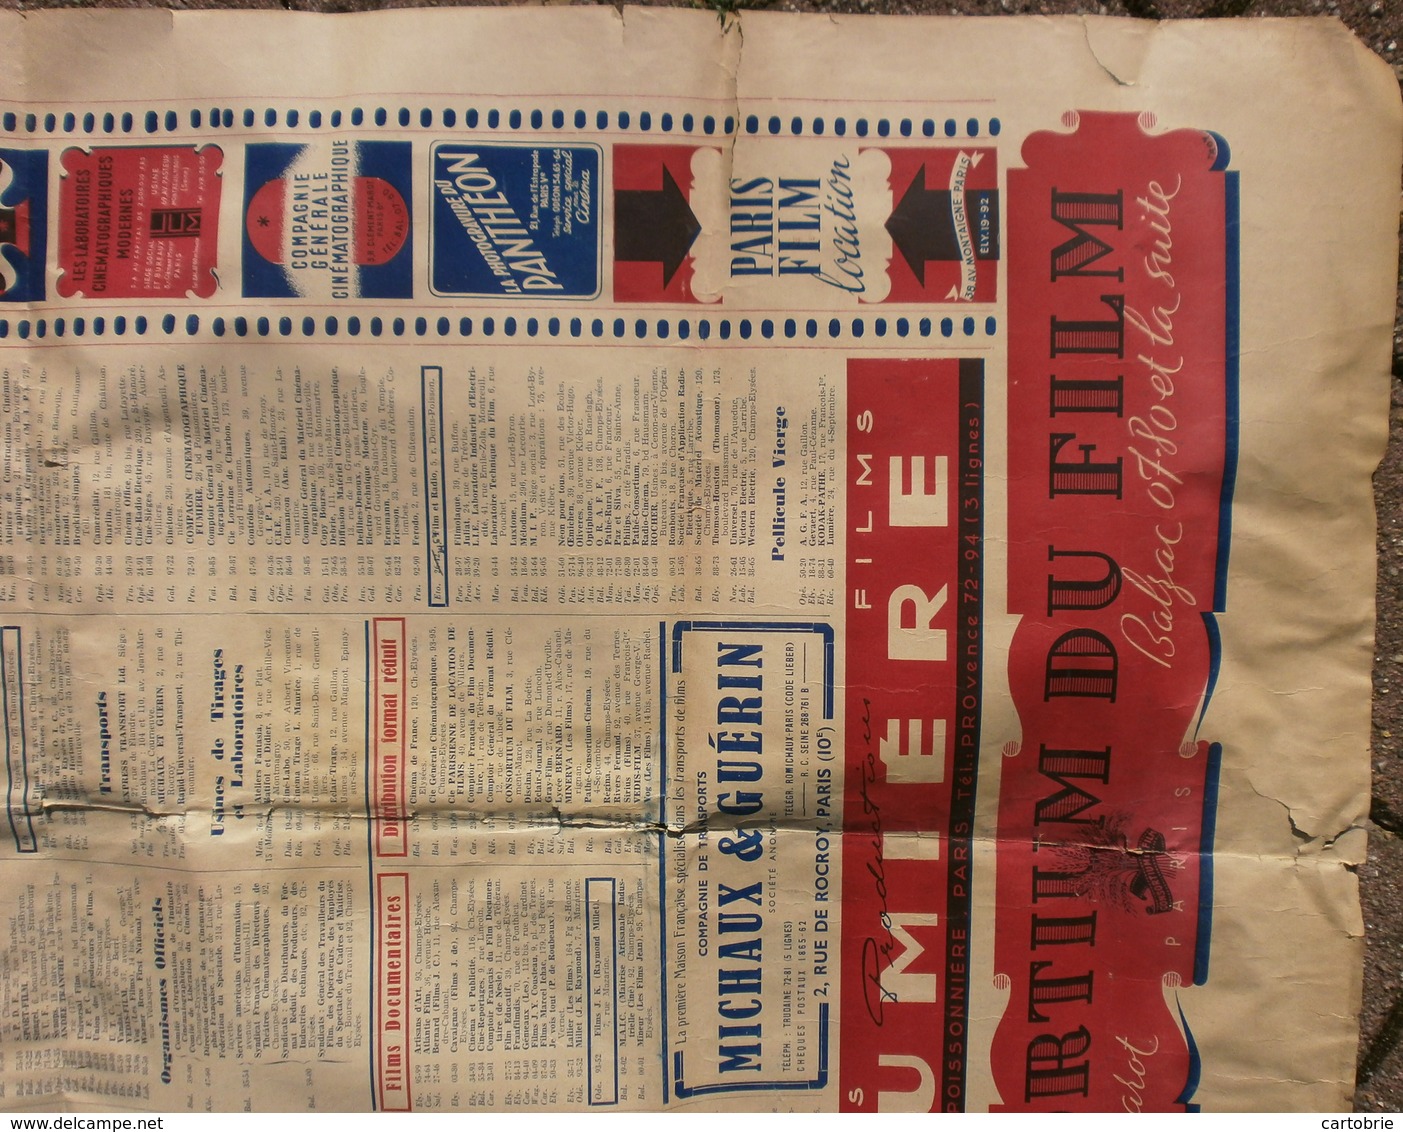 "CINÉ-ADRESSES", Publication annuelle 1945 (affiche) - INFOS PROFESSIONNELLES CINÉMA publicité Commodore Gaumont Minerva